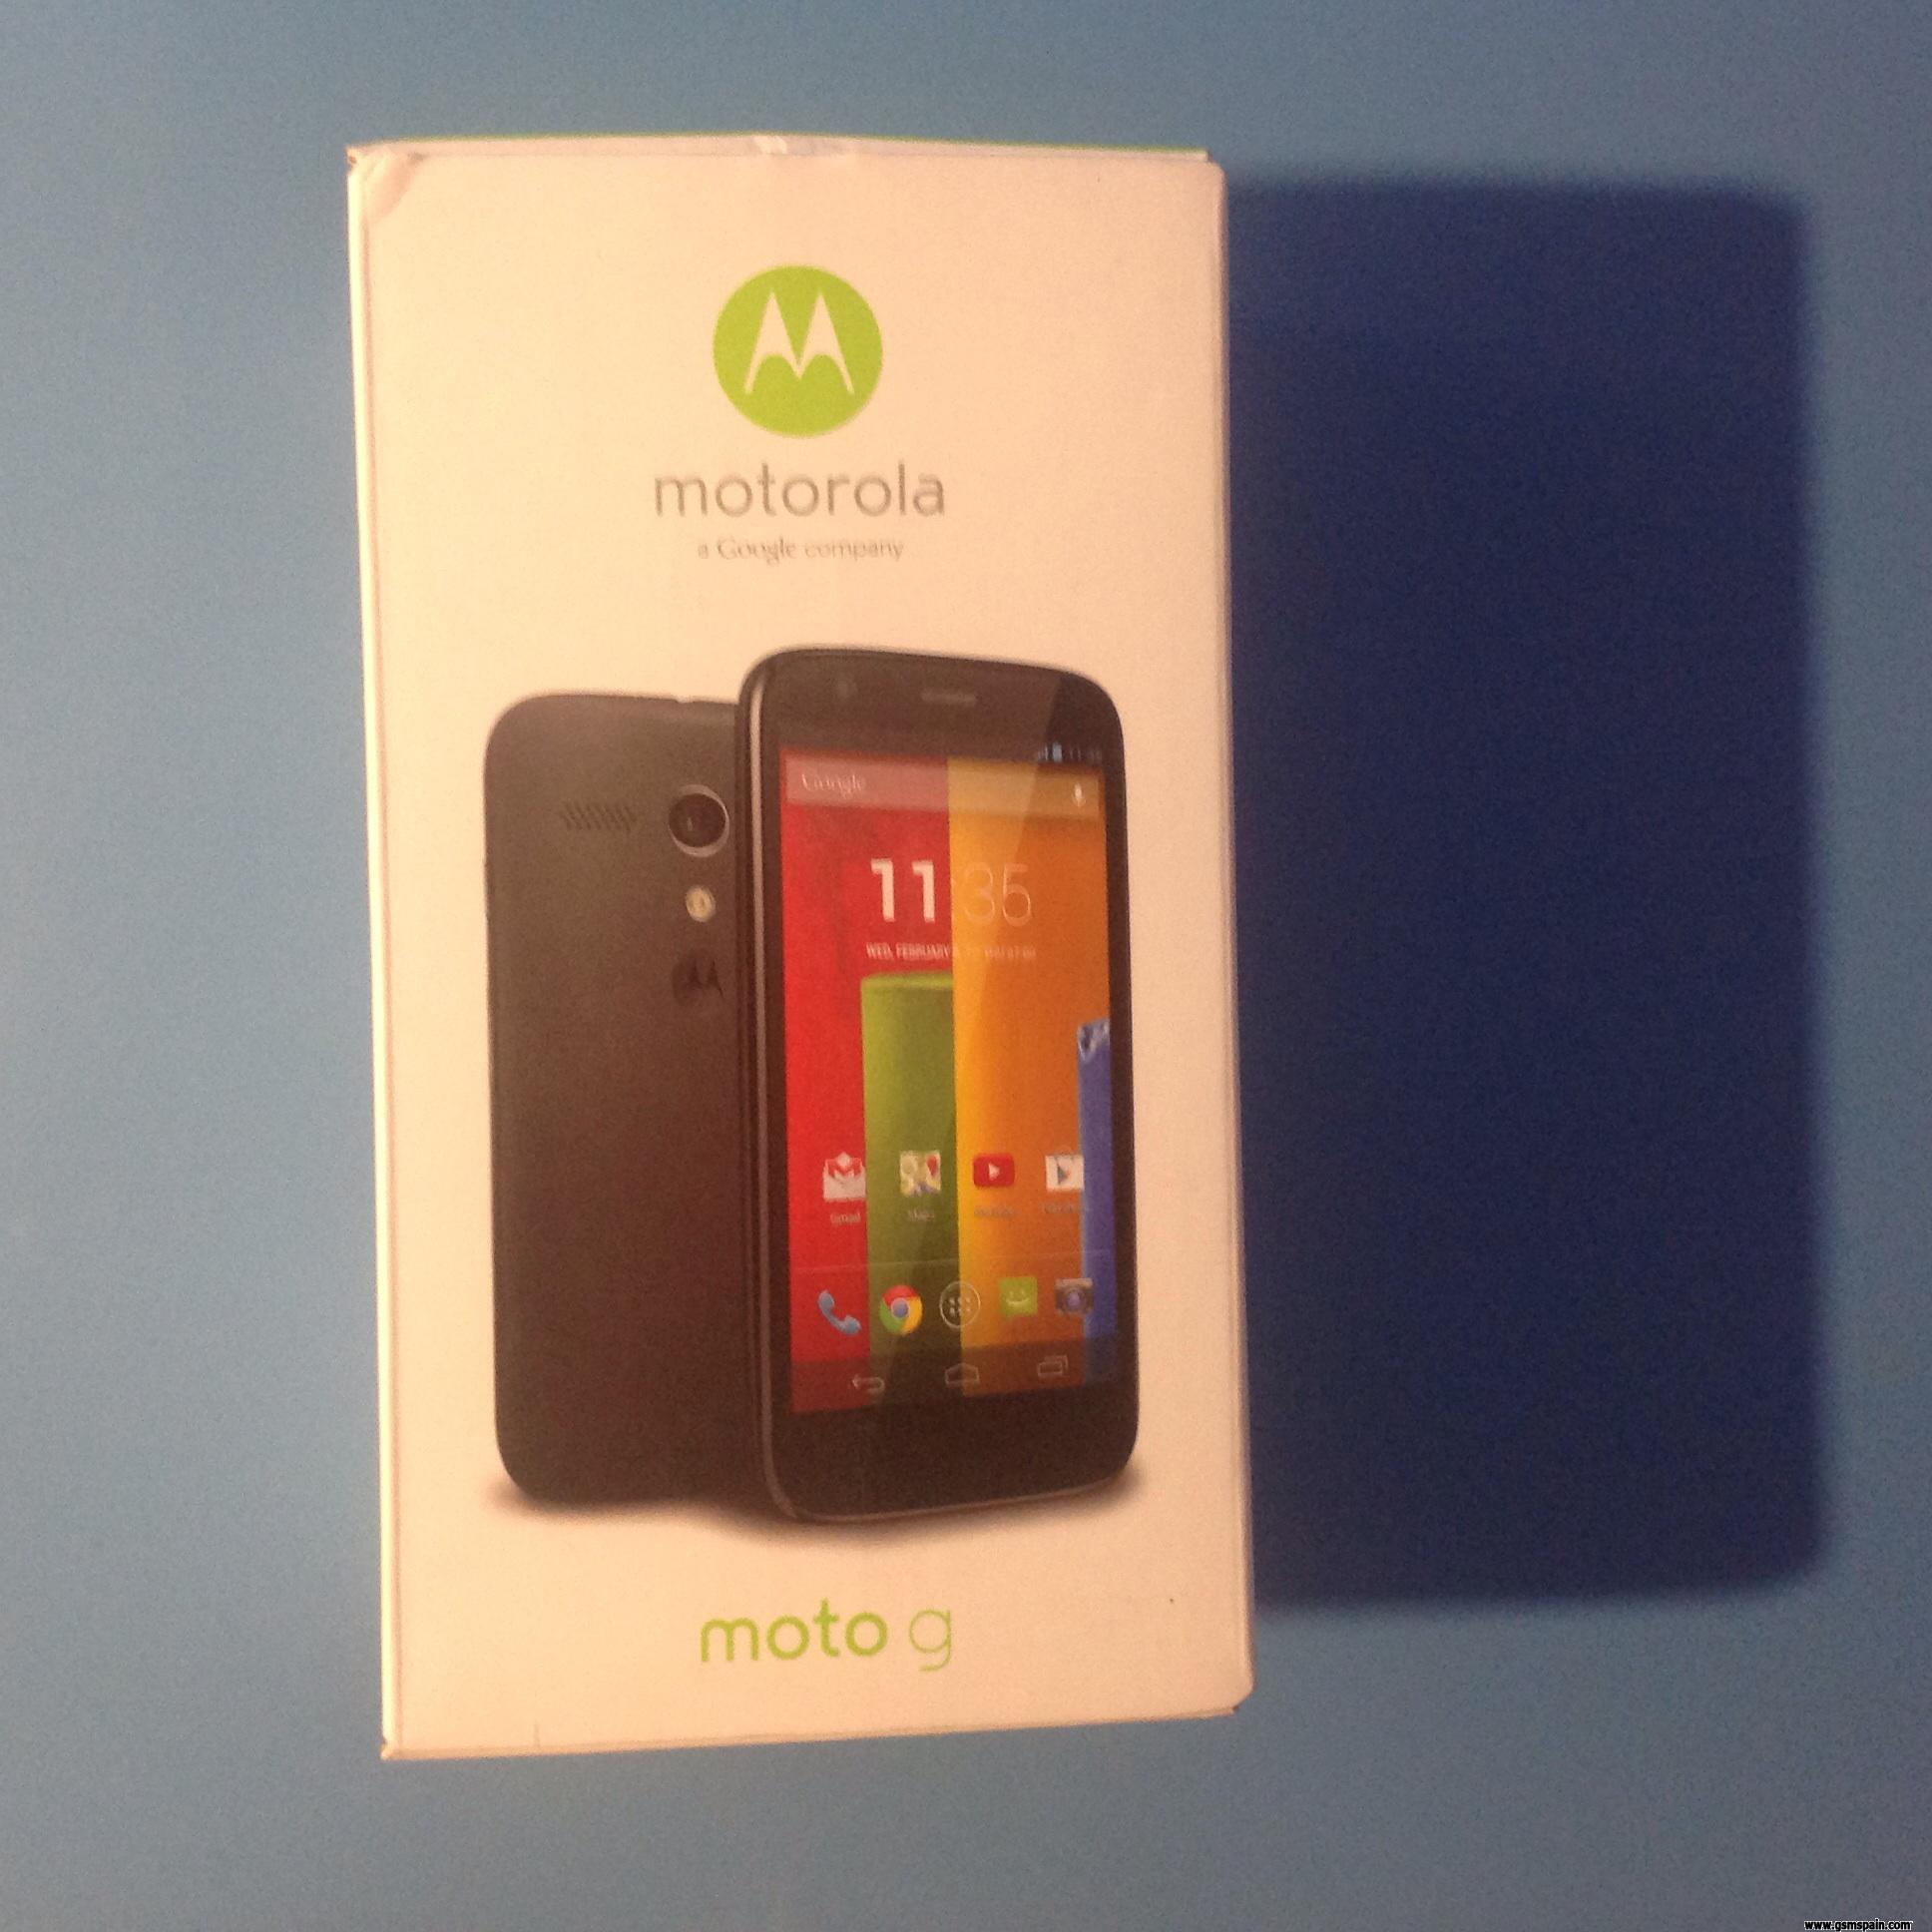 [VENDO] Motorola moto g 8 gb,sin uso